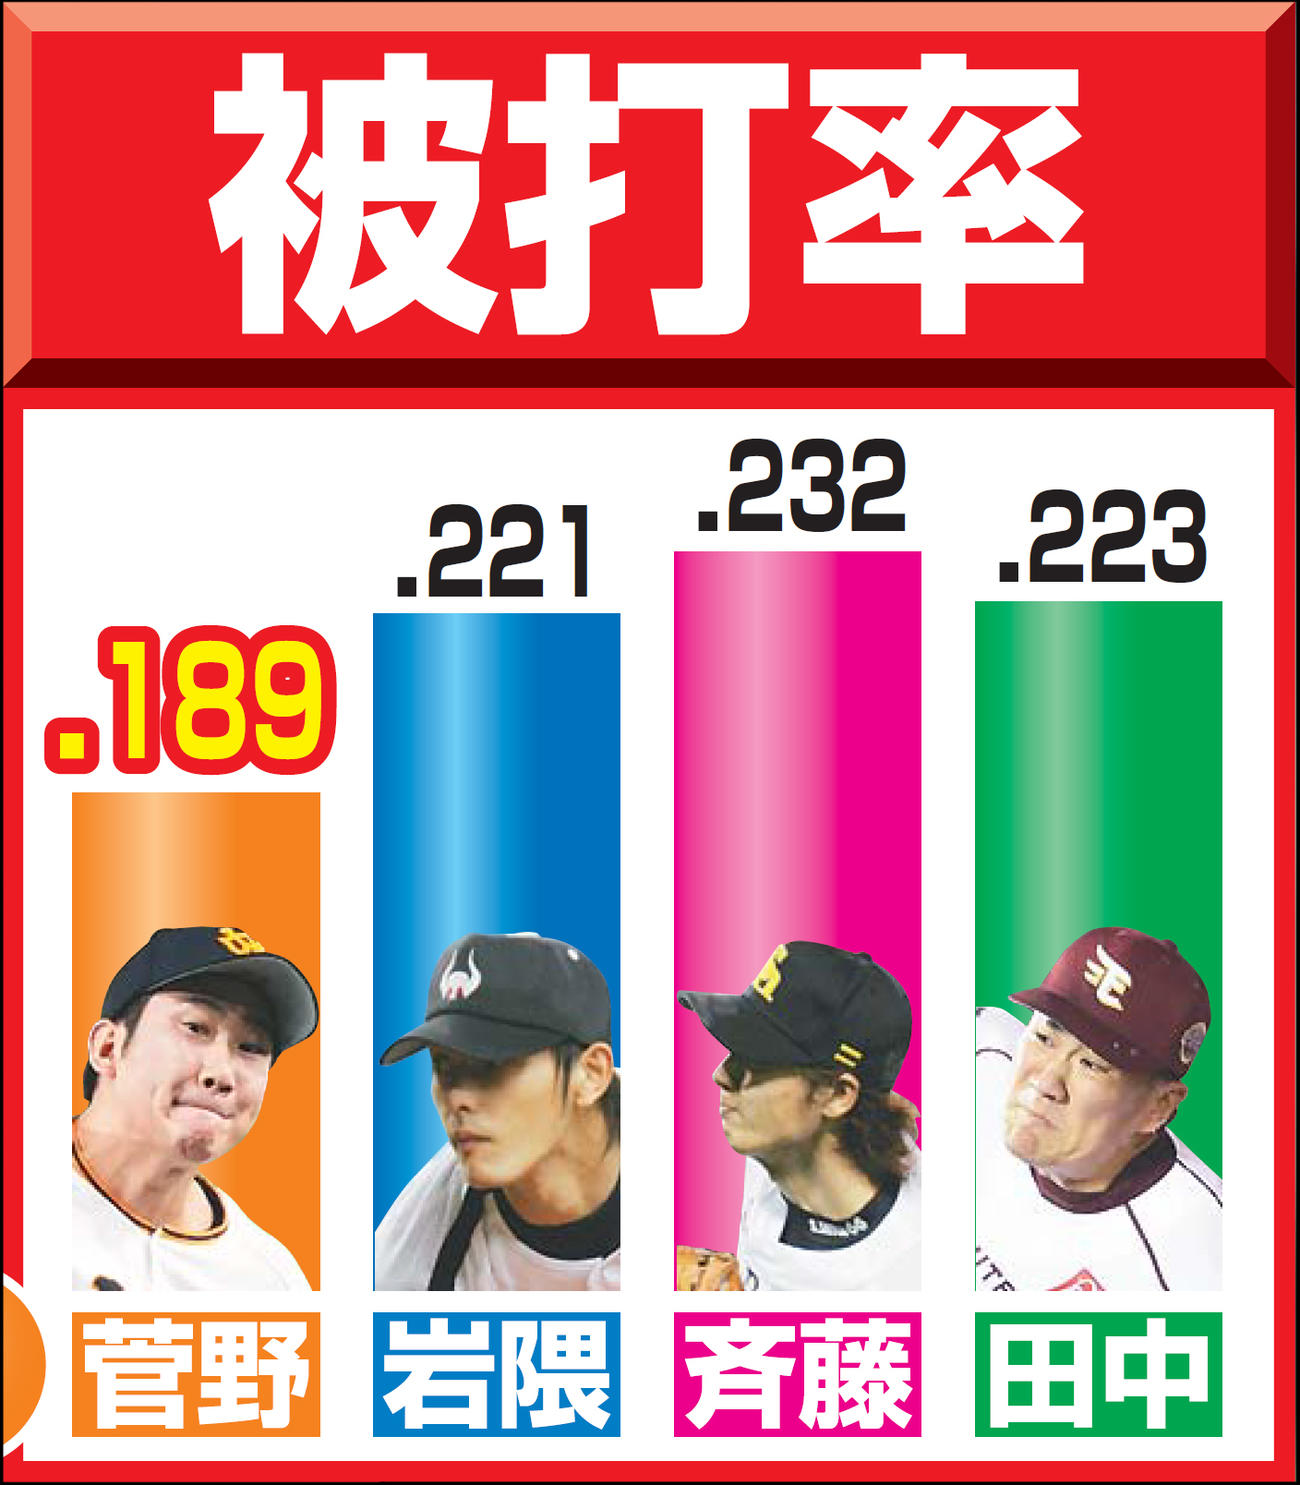 今季の巨人菅野、04年近鉄岩隈、05年ソフトバンク斉藤、13年楽天田中の被打率の比較